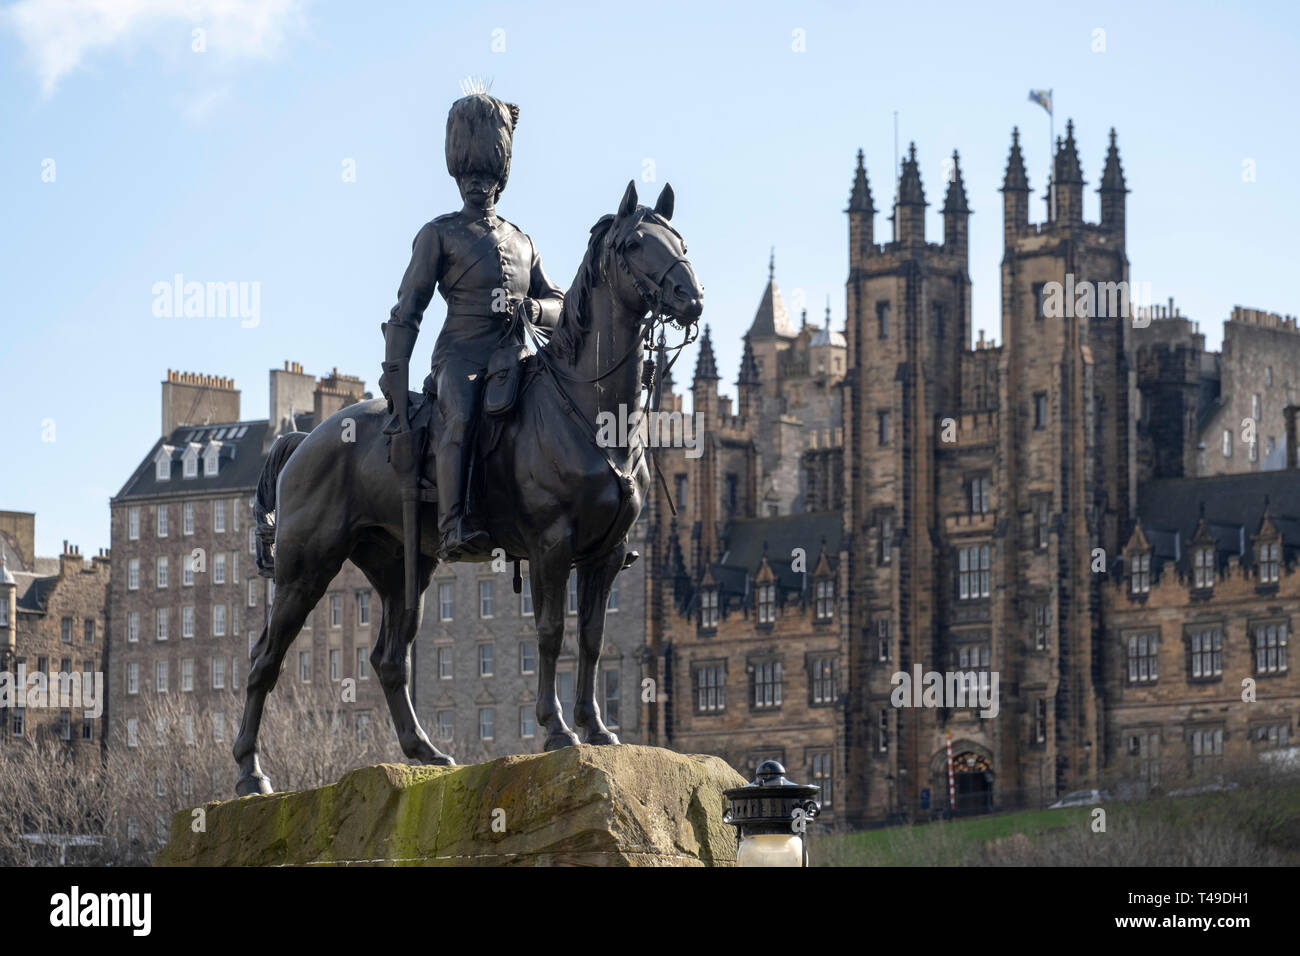 Royal Scots Greys Guerra de los Bóers estatua ecuestre en Edimburgo, Escocia, Reino Unido, Europa Foto de stock